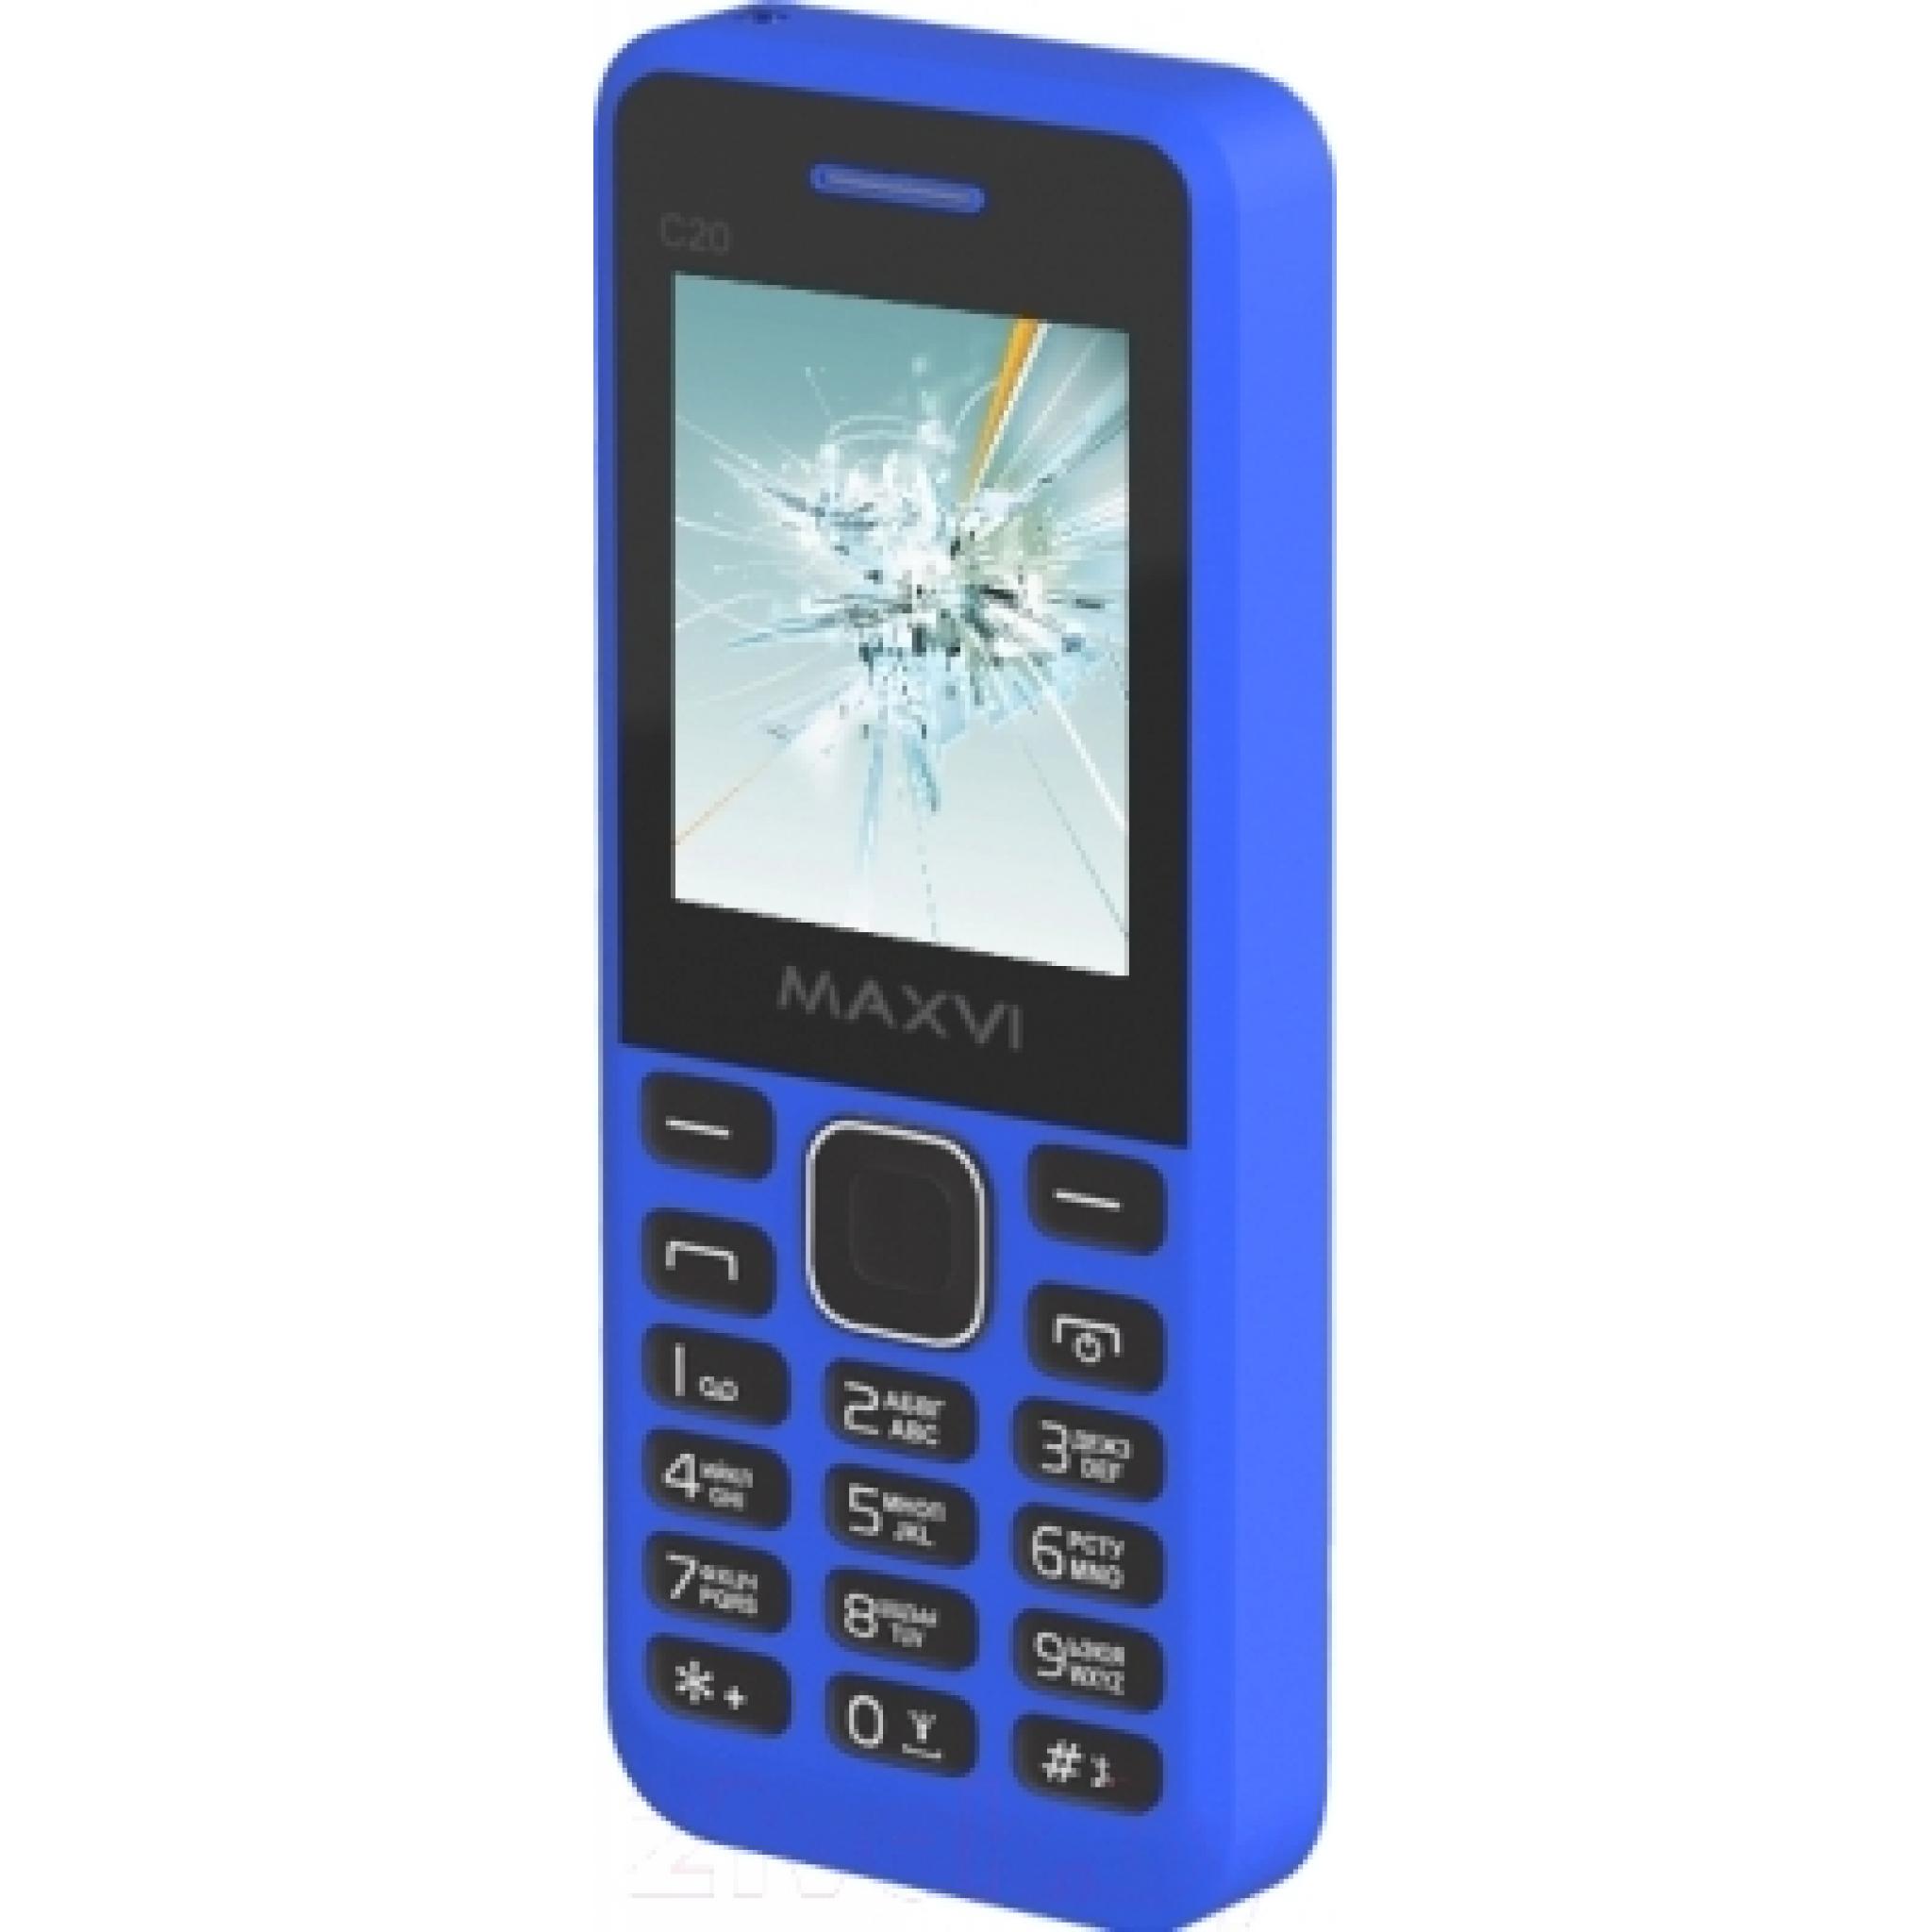 Дешевые телефоны чебоксары. Maxvi c23. Телефон Maxvi c20. Maxvi с20. Maxvi c20 Black.